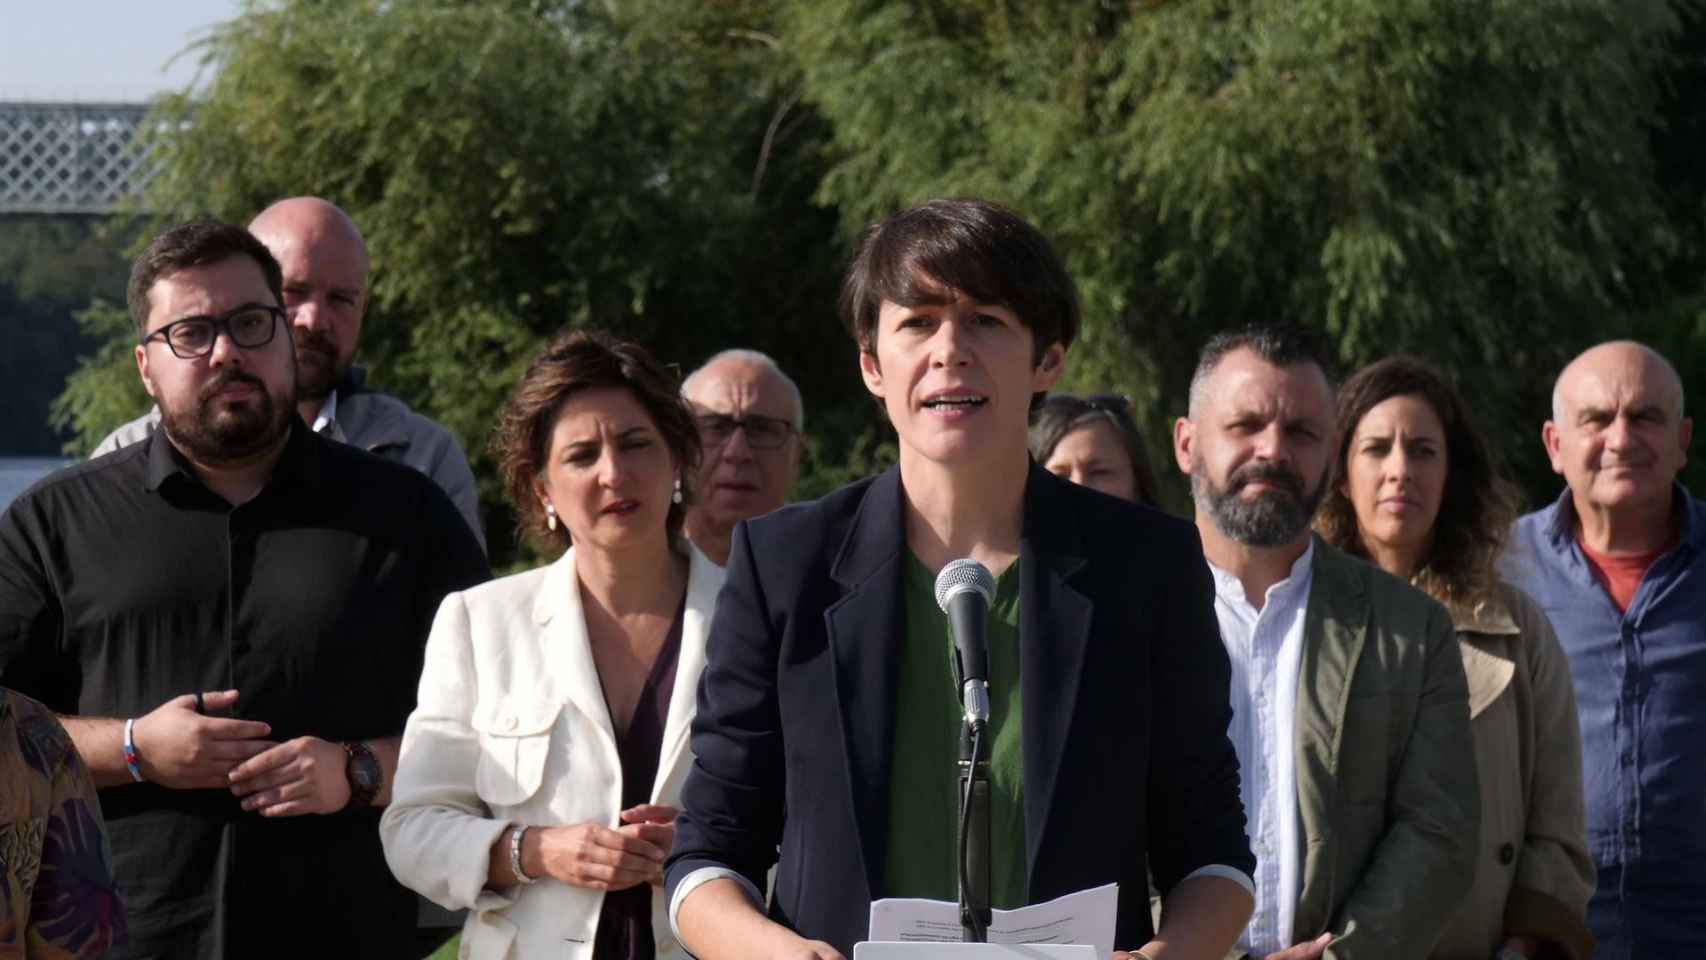 La portavoz nacional del BNG, Ana Pontón.